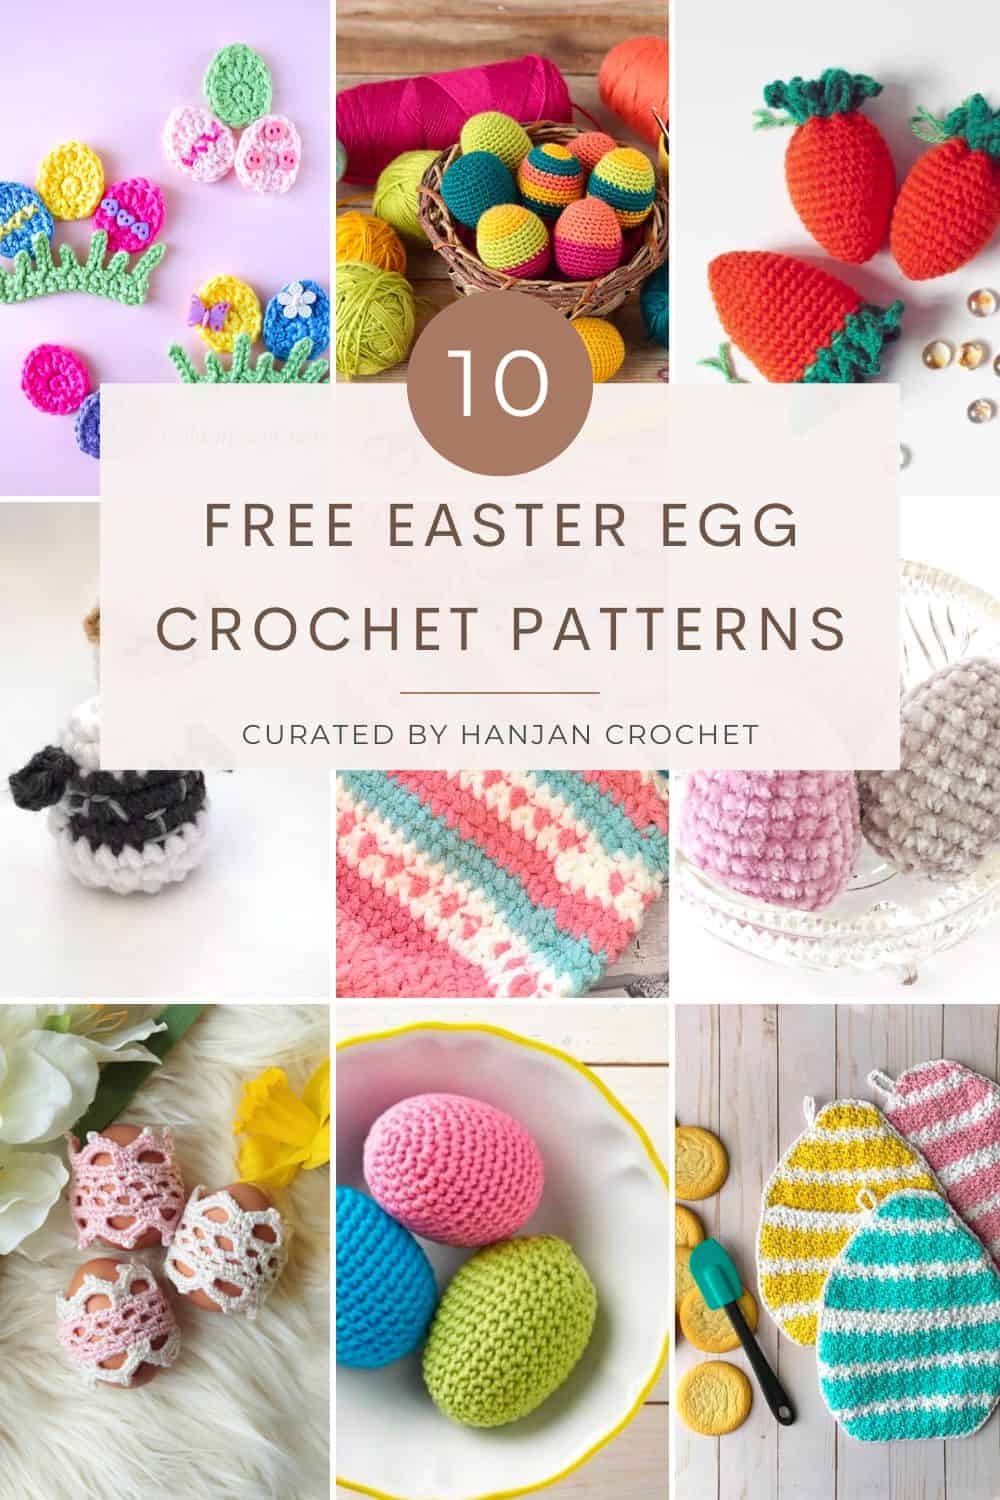 Free Easter Egg Crochet Patterns.